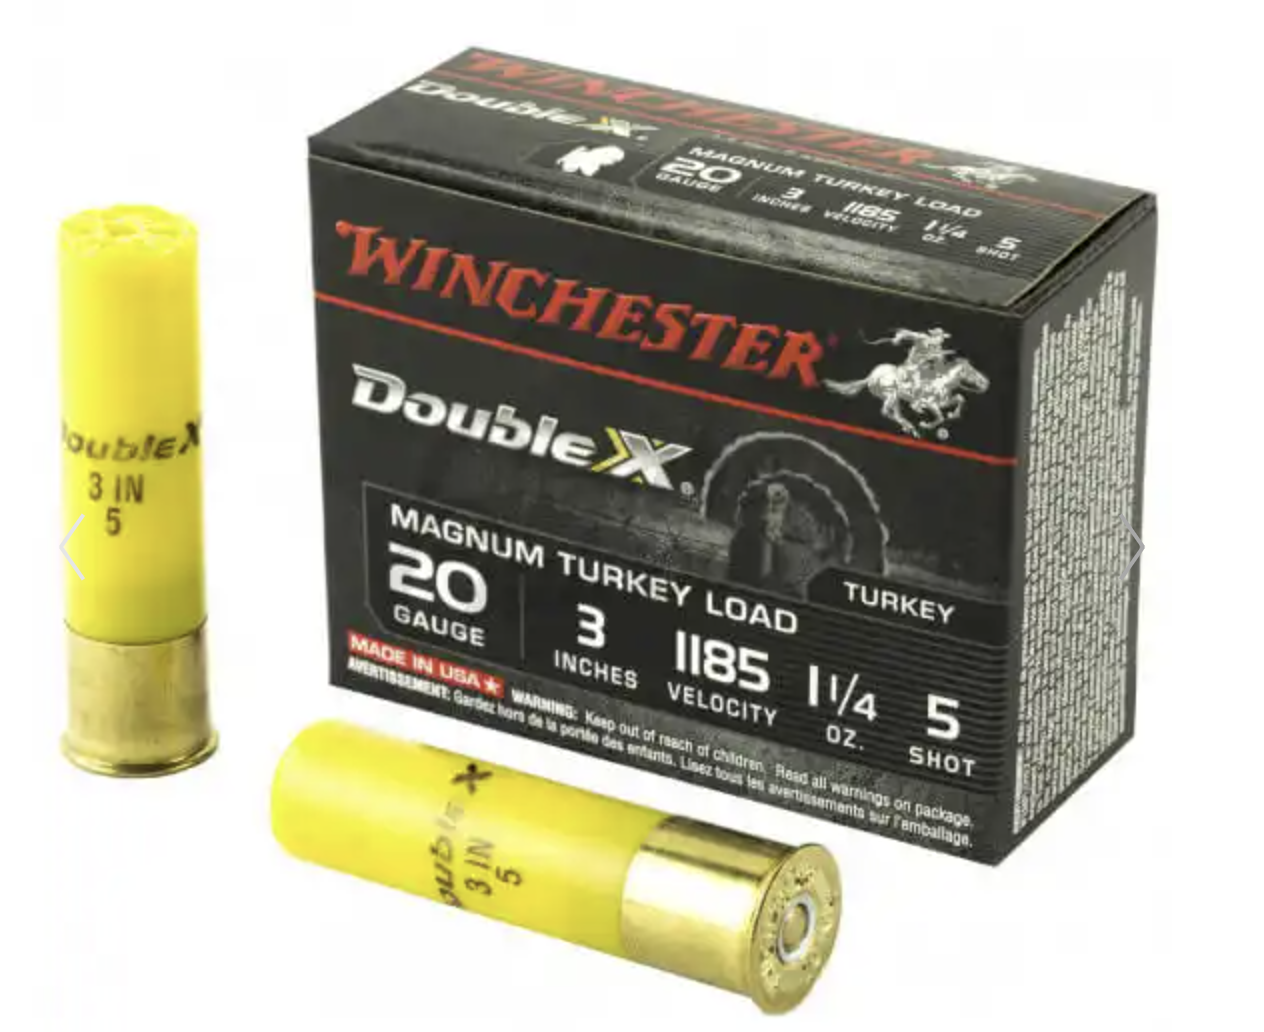 Winchester DoubleX Magnum Turkey Load 20G 5 shot-img-0